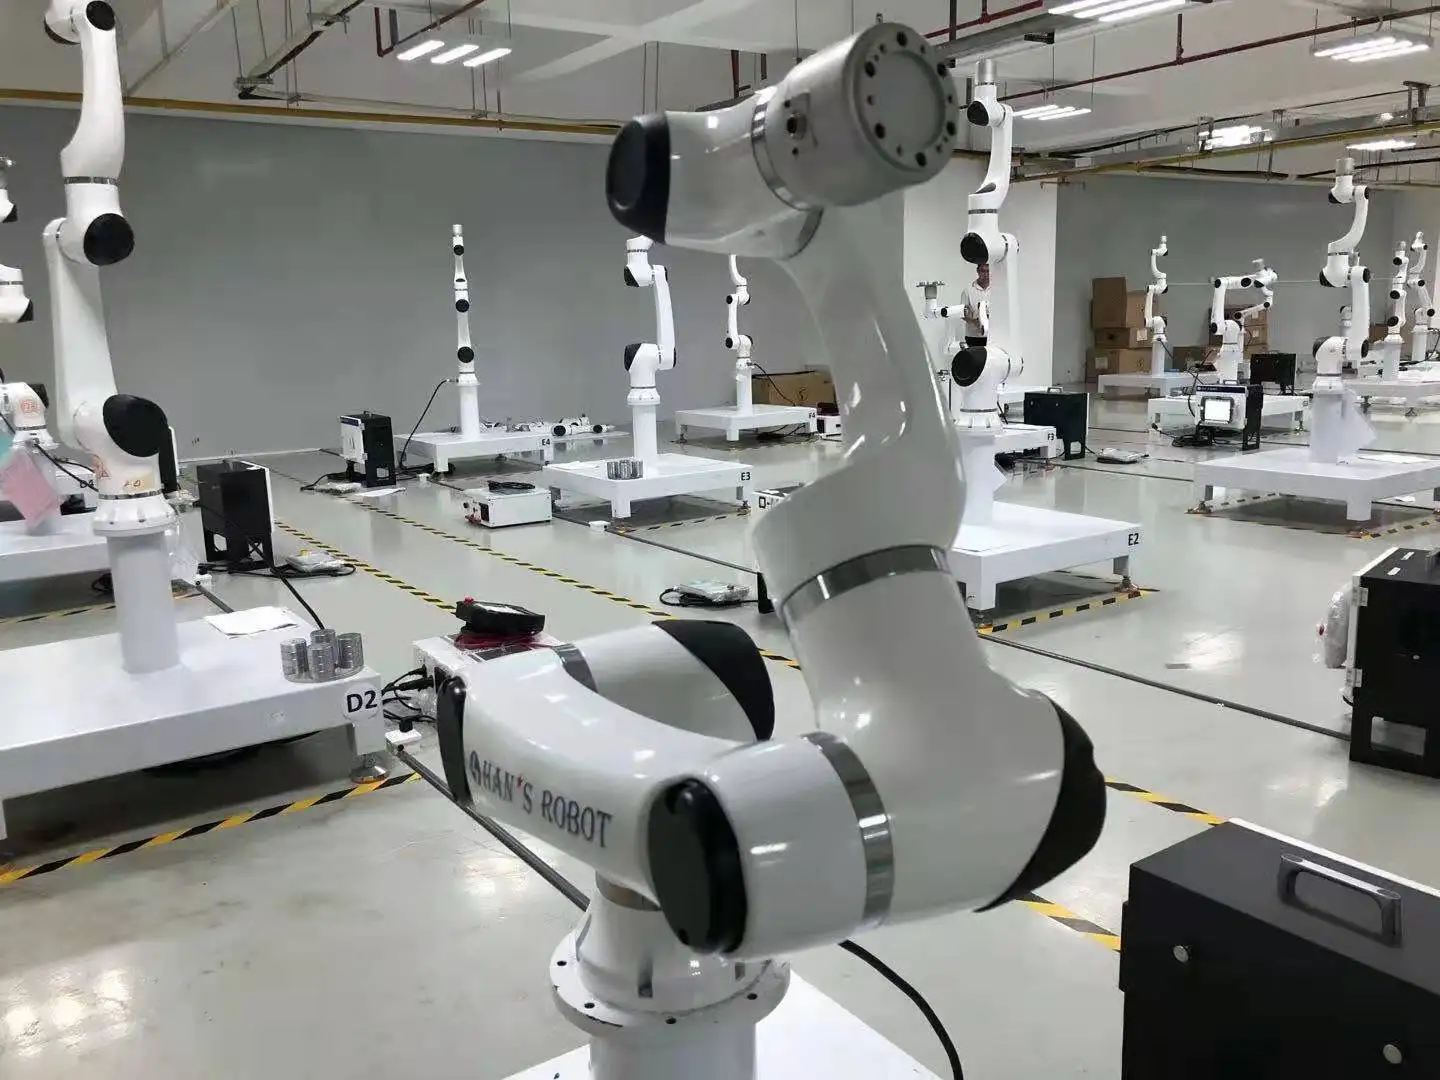 6 κινητό ρομπότ Cobot χειρισμού πλατφορμών αστεριών Han ρομπότ βραχιόνων άξονα ως προγραμματίσημο βραχίονα ρομπότ